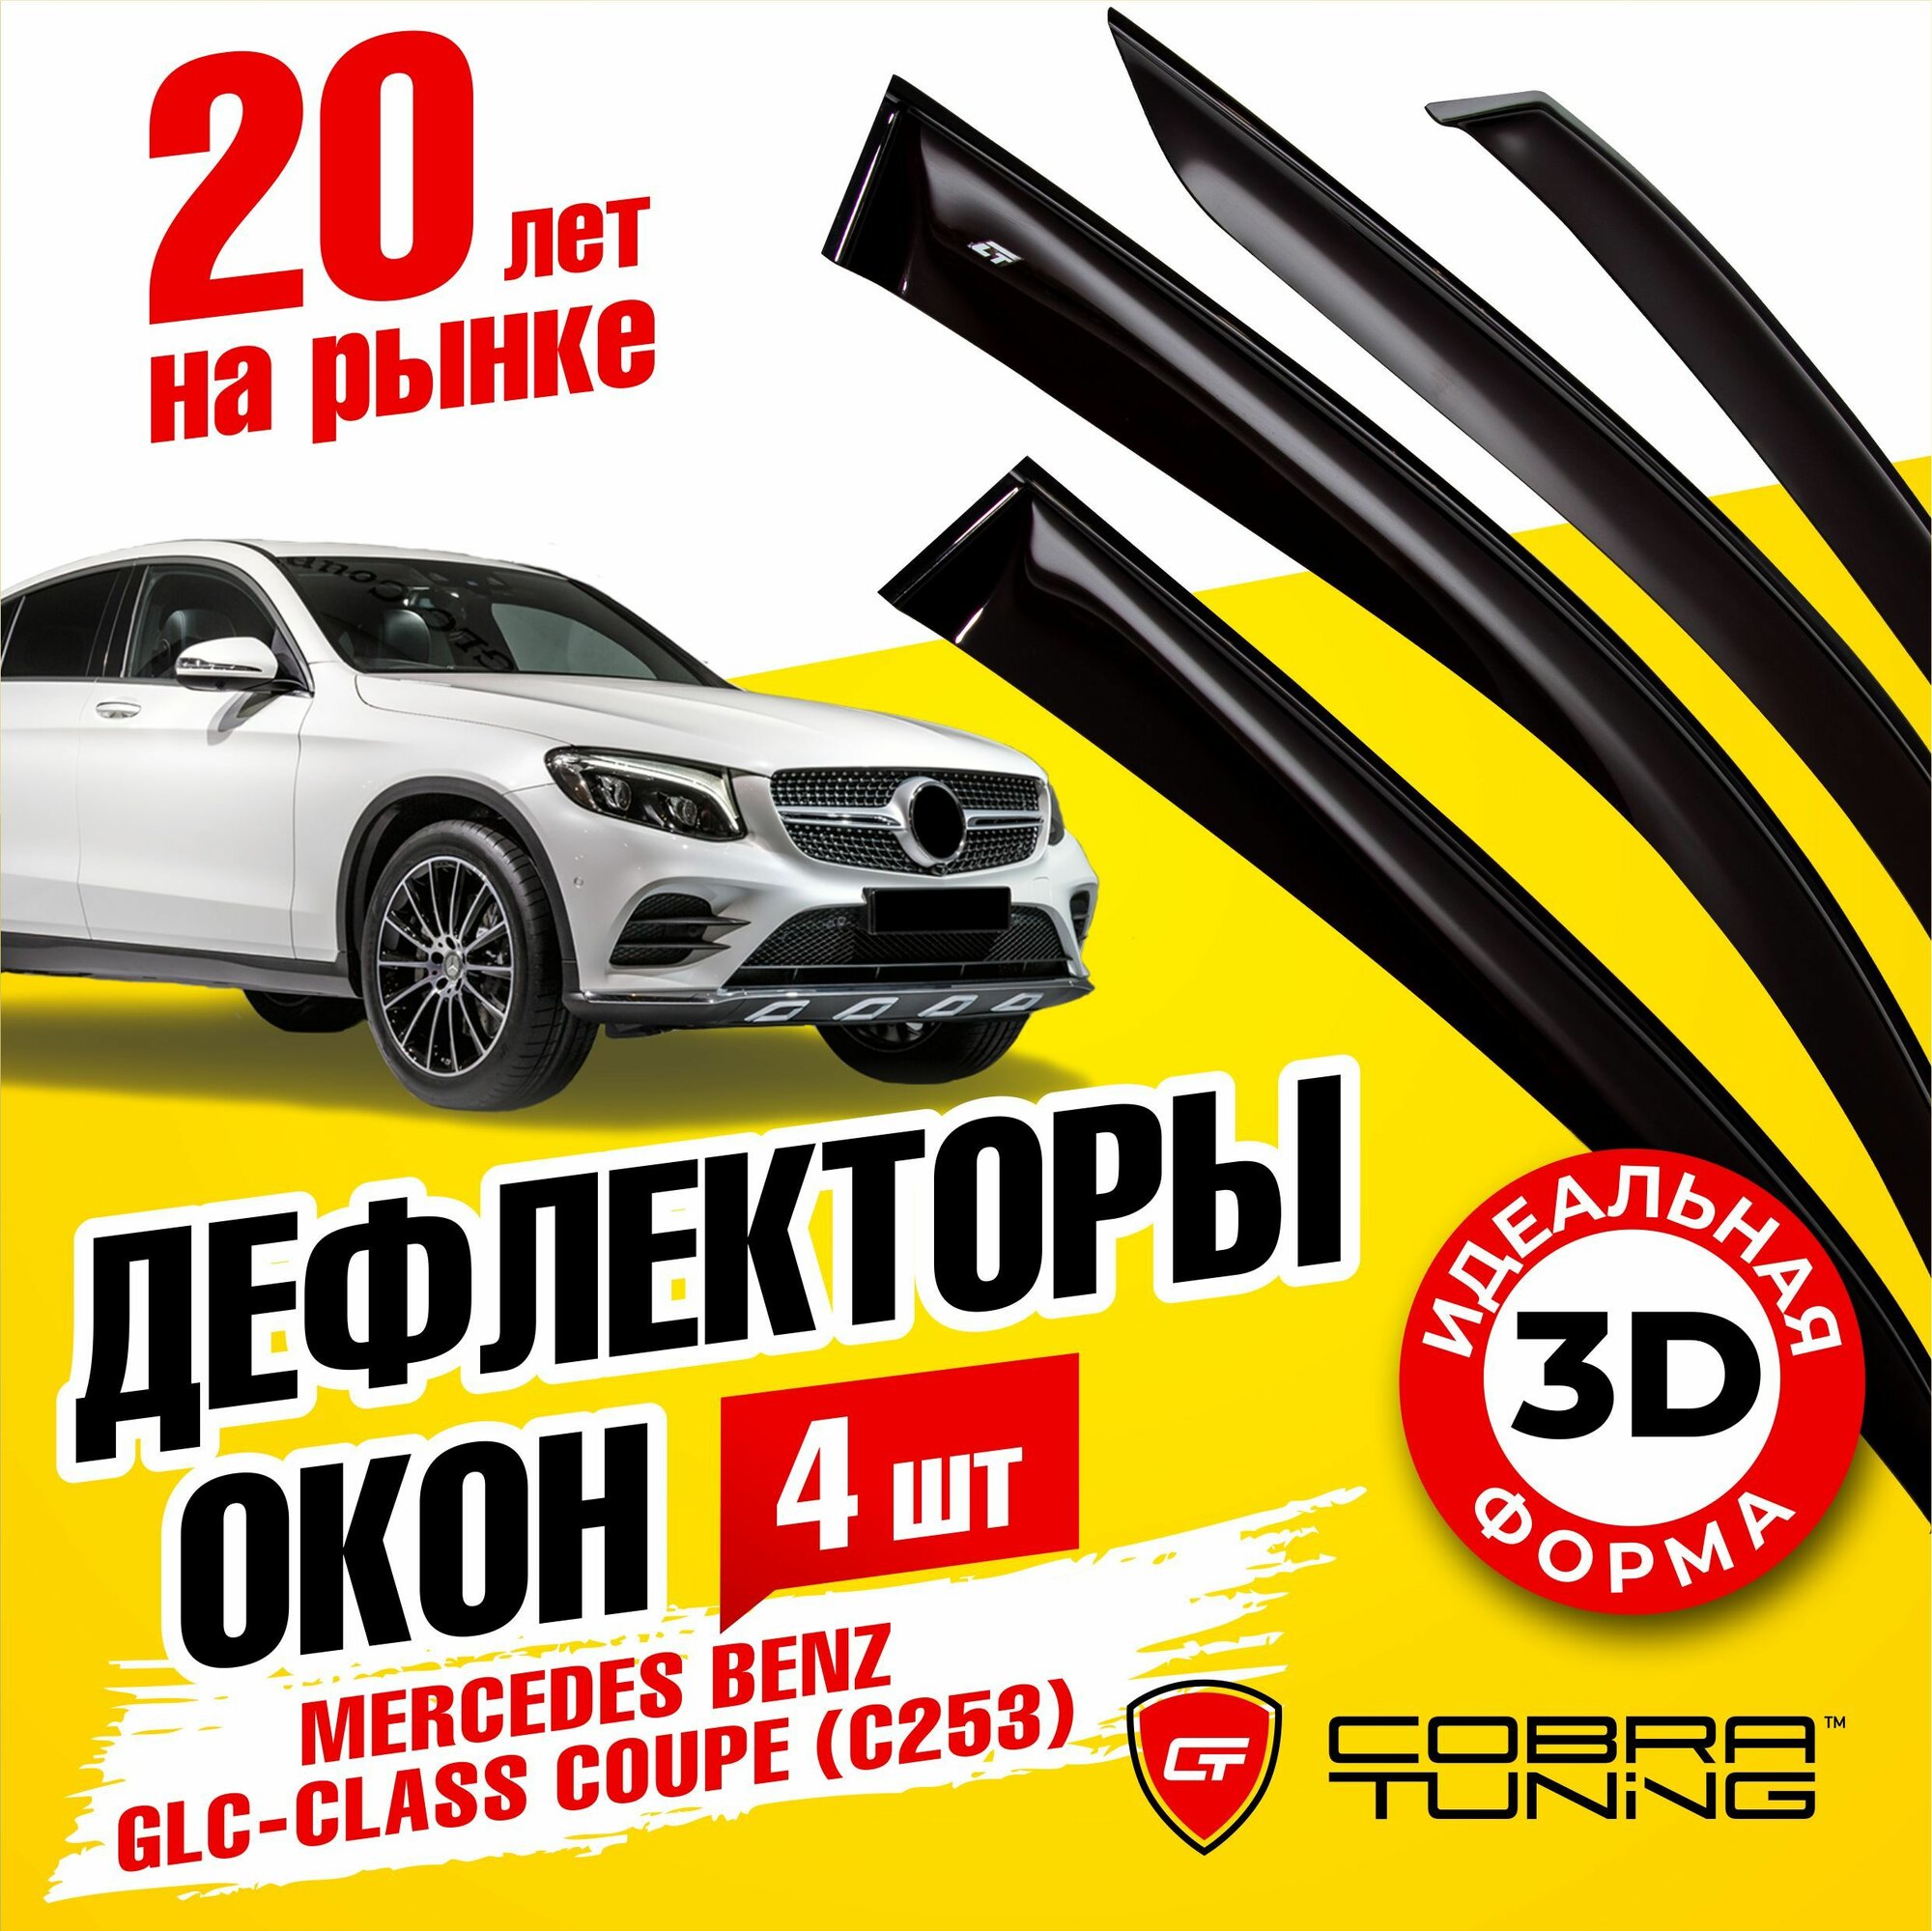 Дефлекторы окон (ветровики) Cobra Tuning для Mercedes Benz GLC-Klasse Coupe 5d (C253) 2016